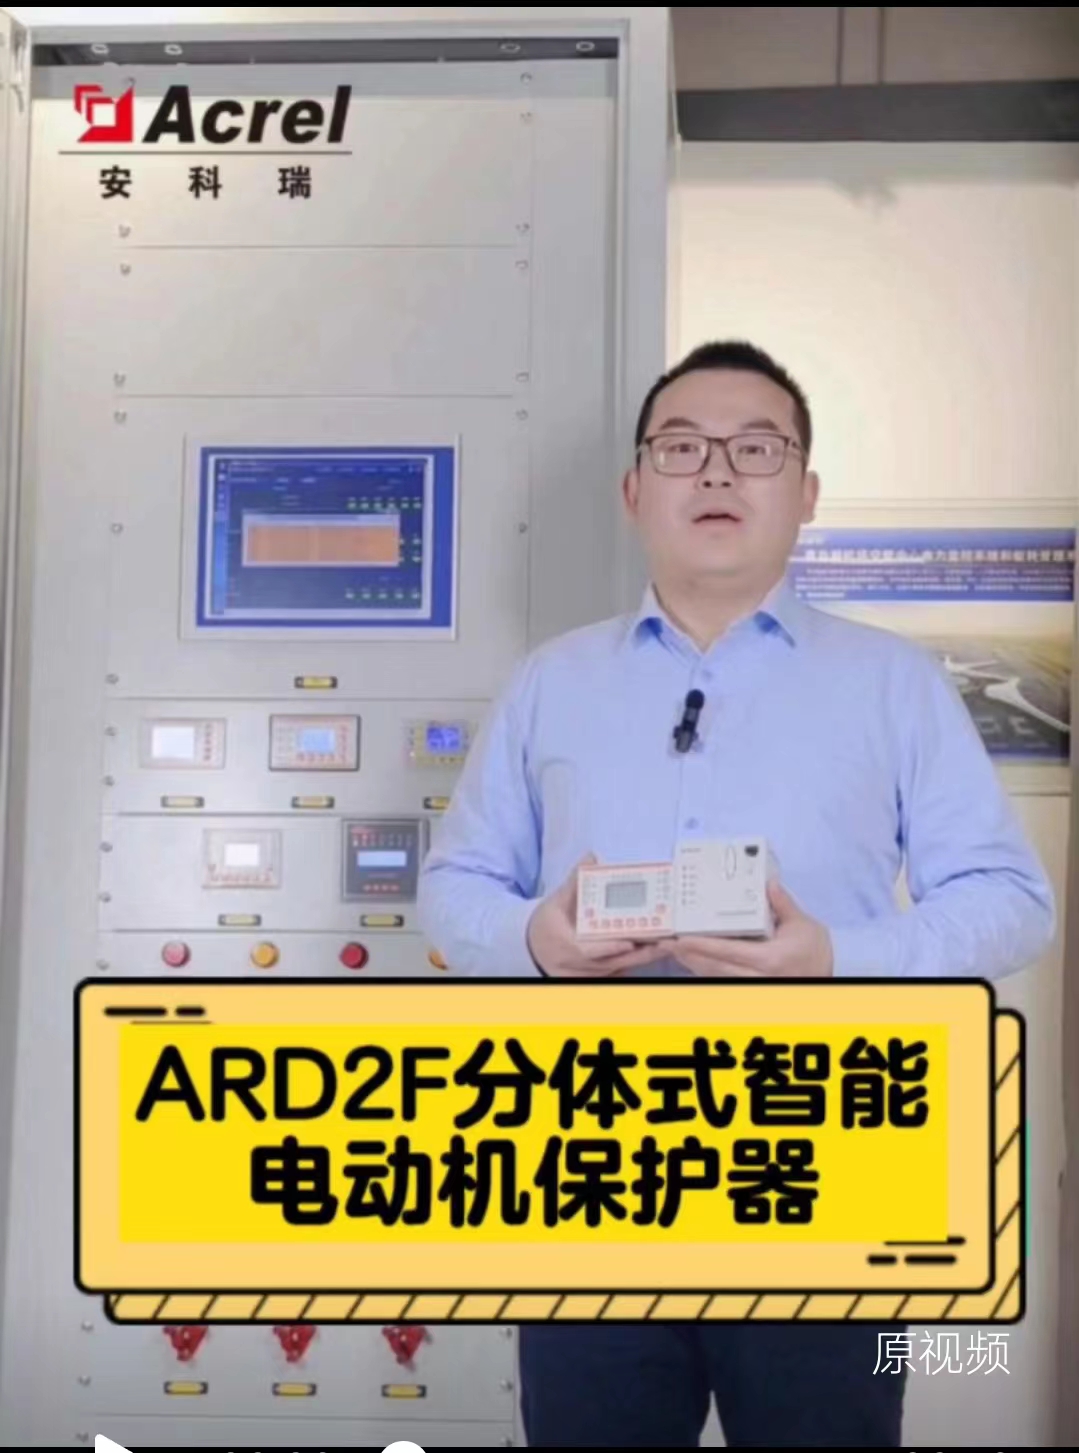 ARD2F电动机保护器能对额定电流范围内的电动机进行起动超时、过载、堵转、阻塞、欠载、不平衡、断相等保护